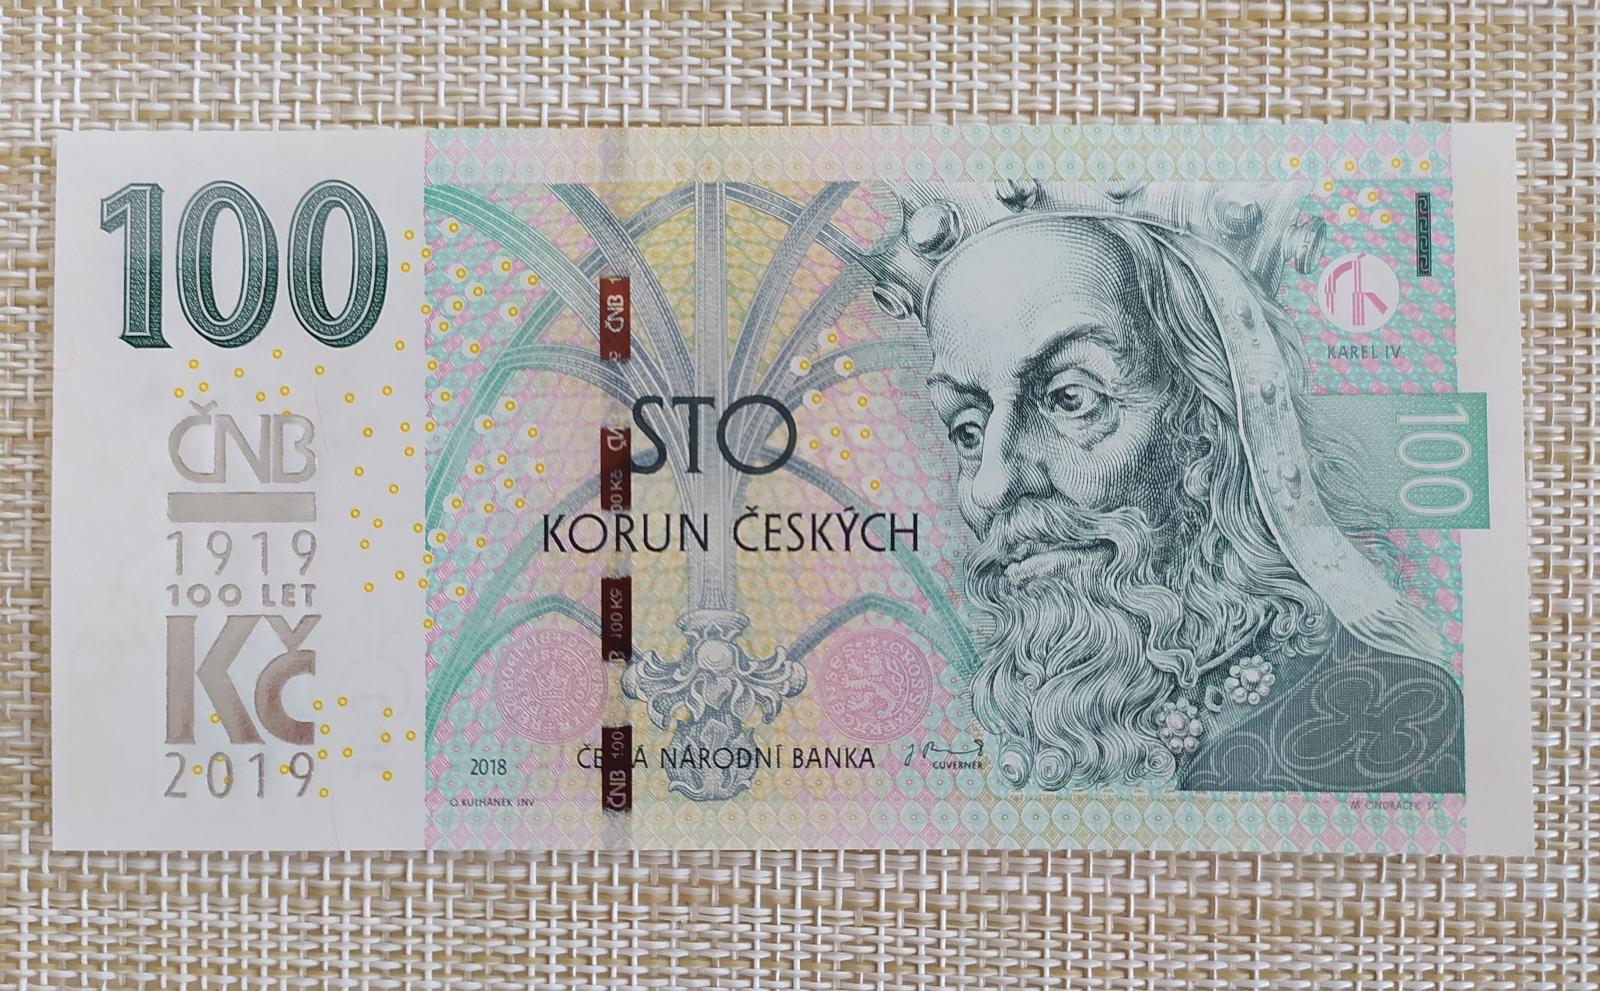 100 KČ s prítlačou ČNB 100 rokov, 2019 Séria M13 - Bankovky